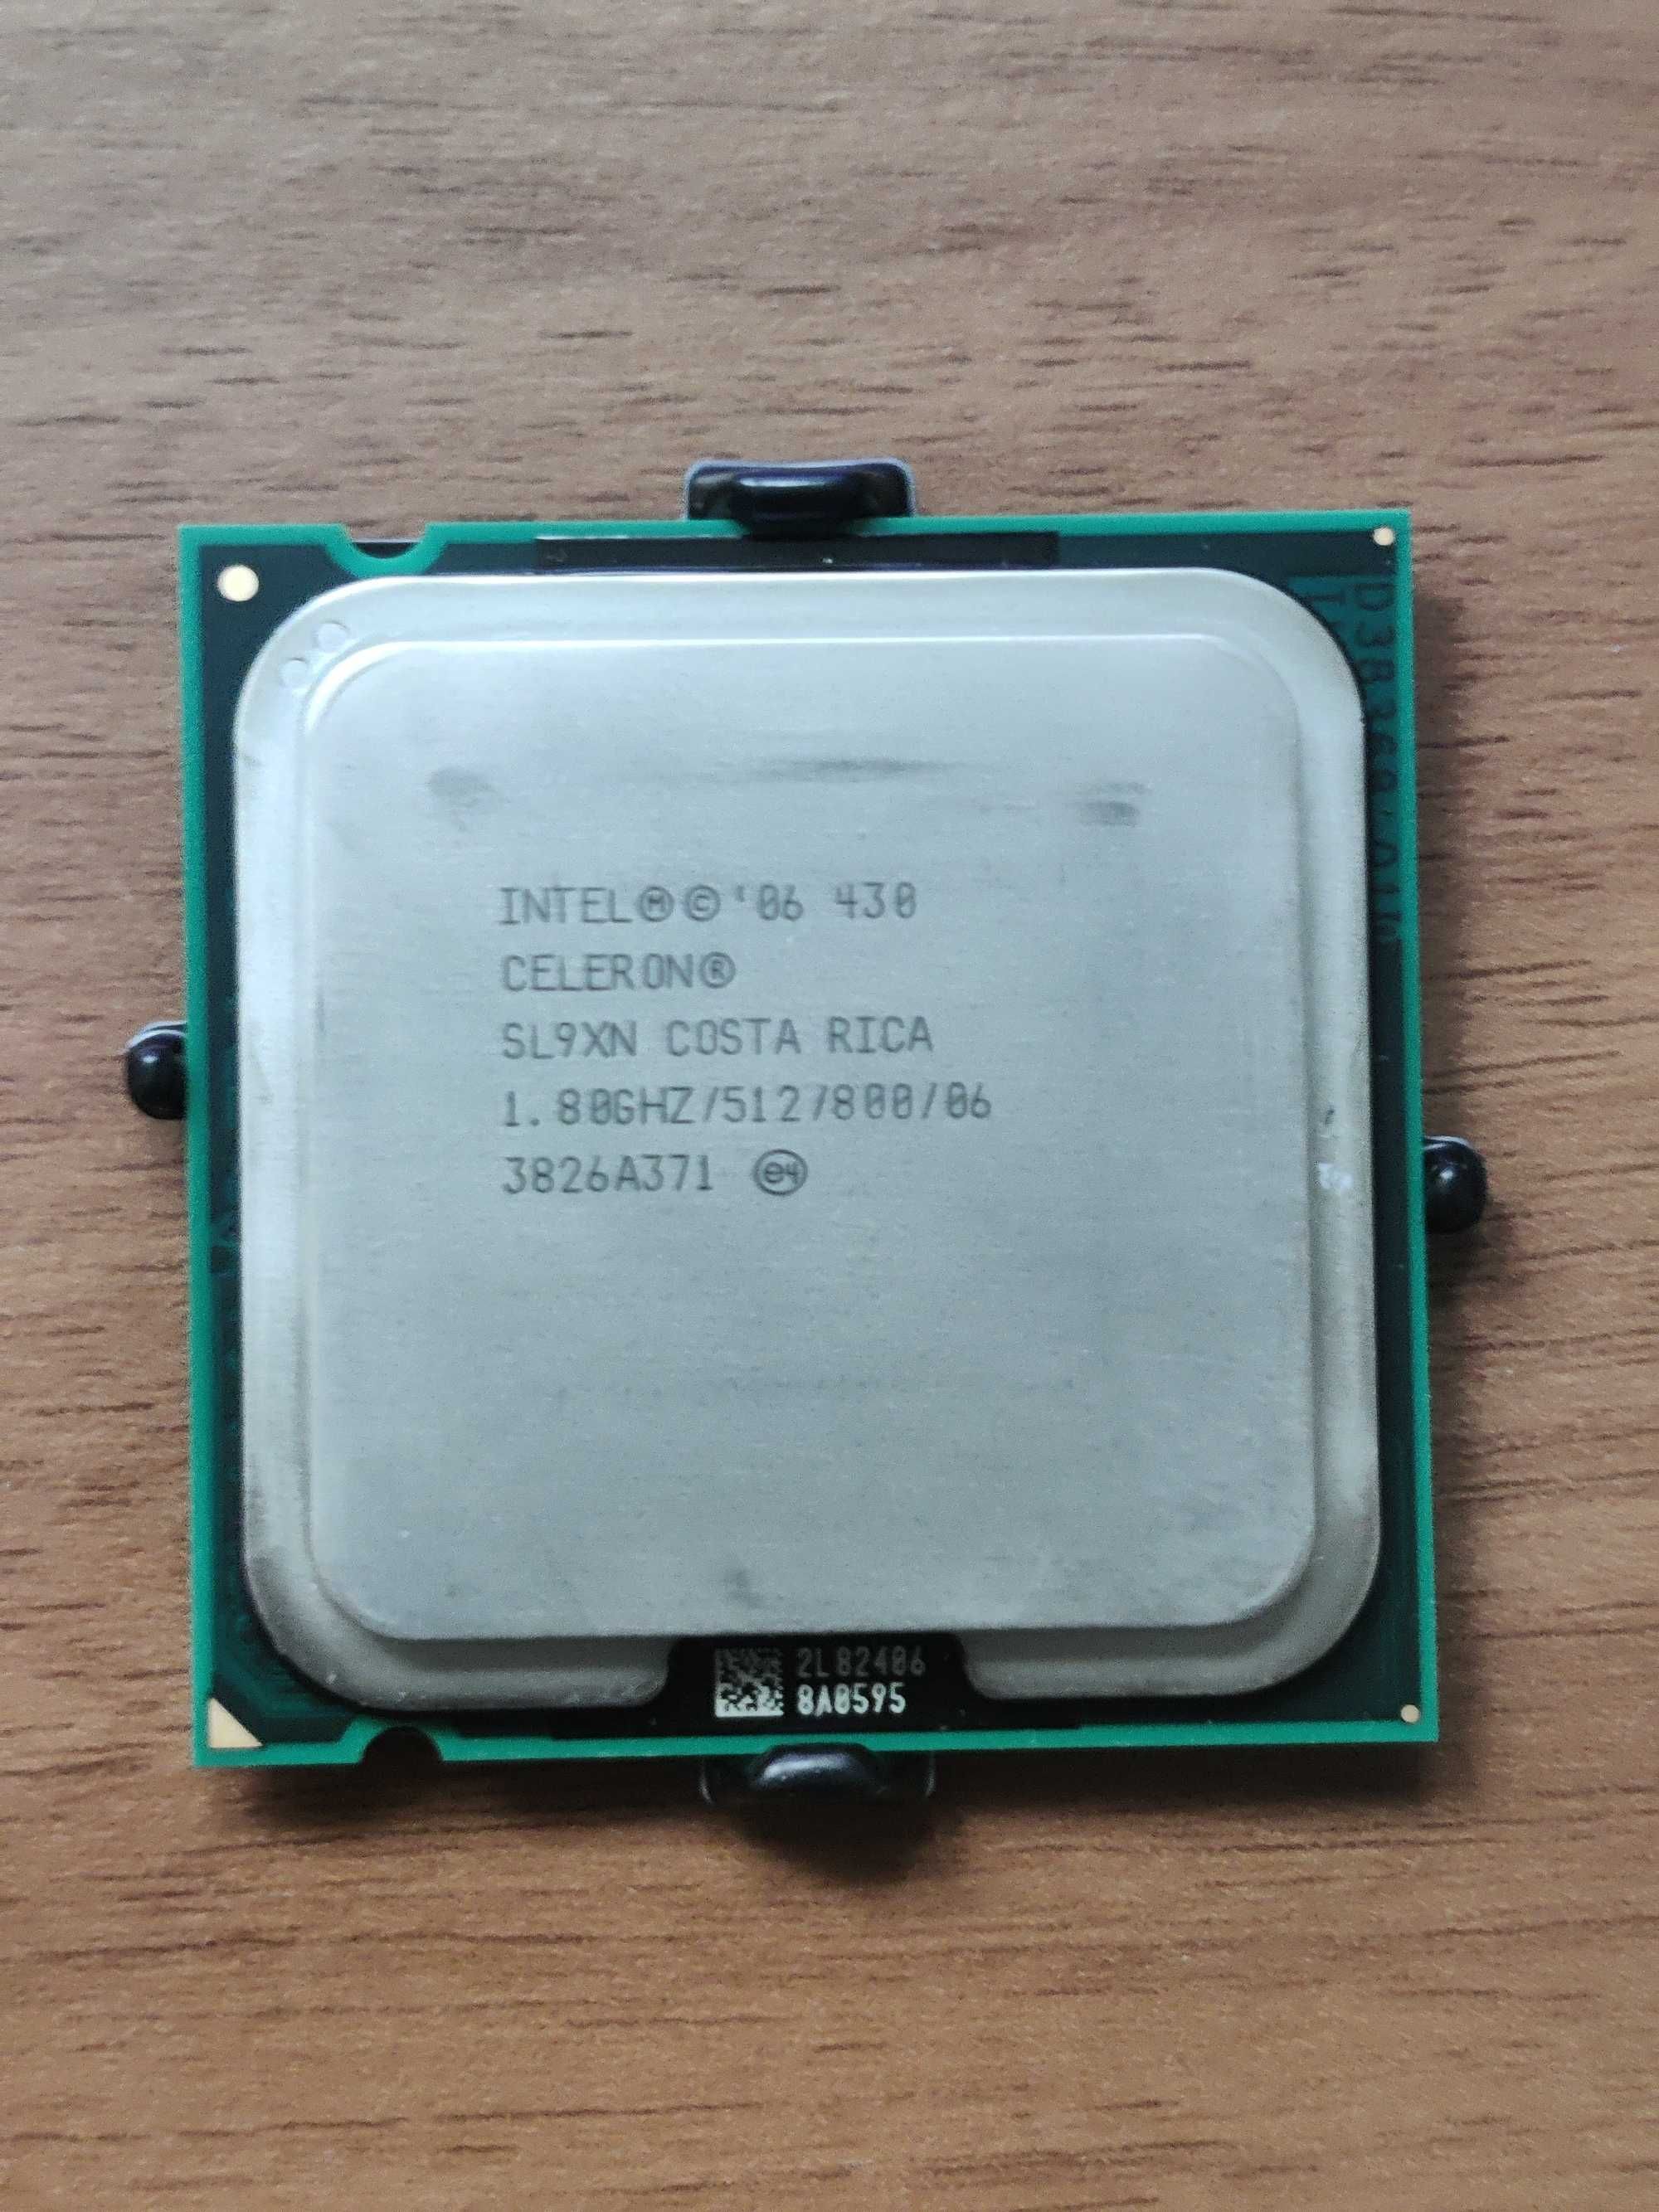 Intel Celeron 430 + cooler